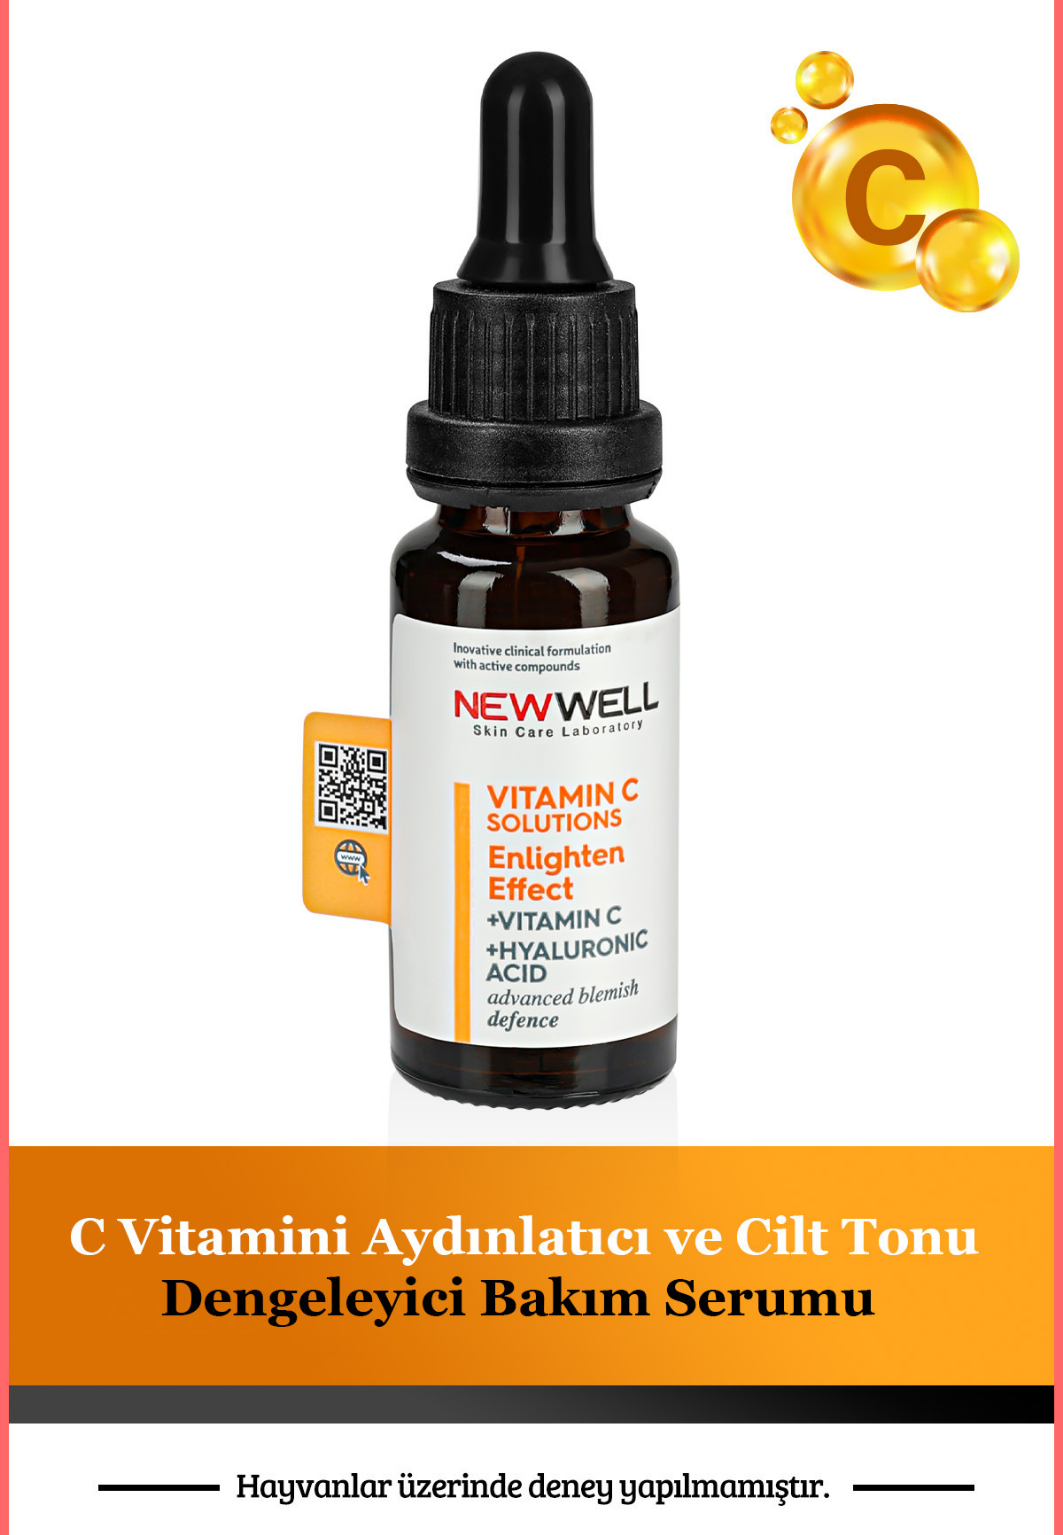 New Well Vitamin C Brightening and Skin Tone Balancing Serum